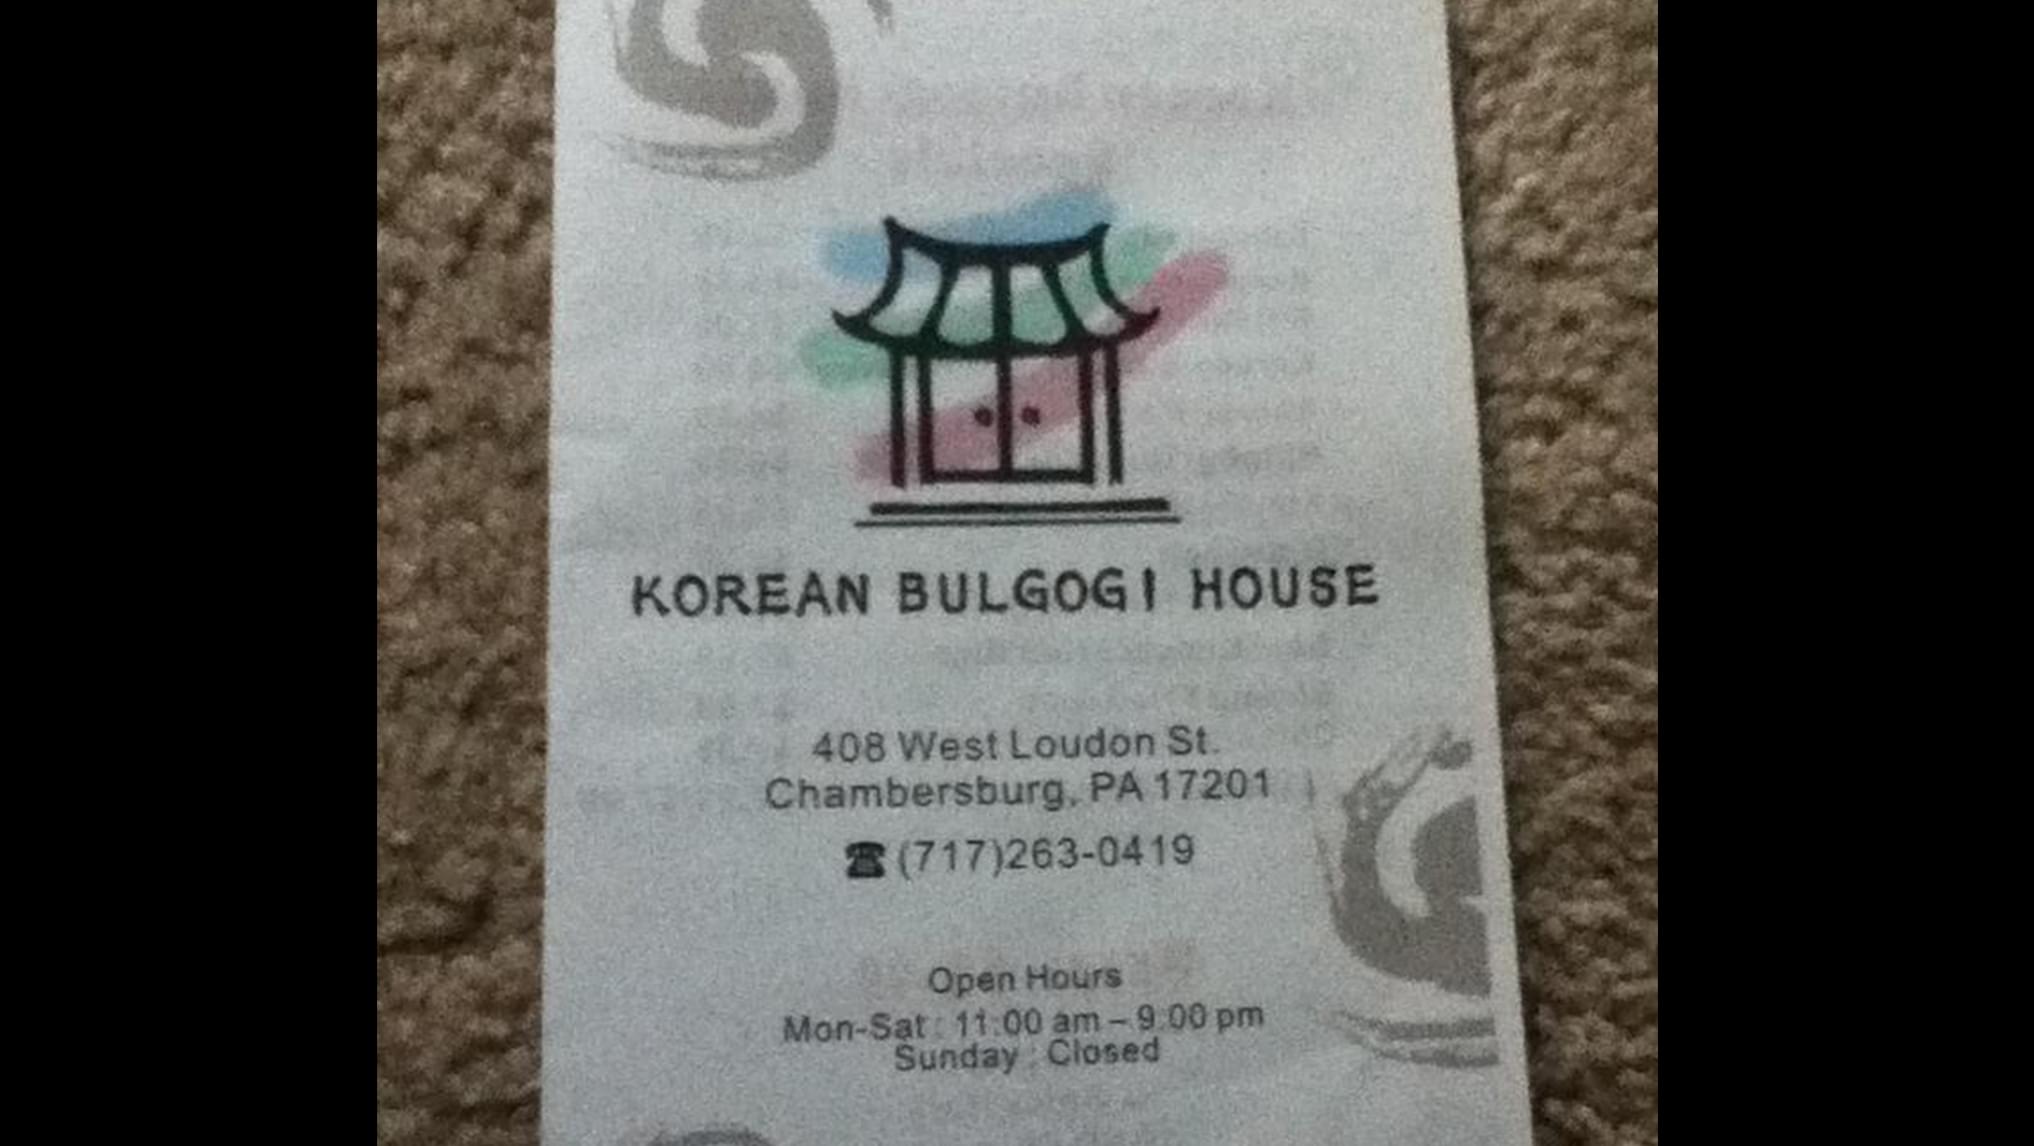 Korean Bulgogi House